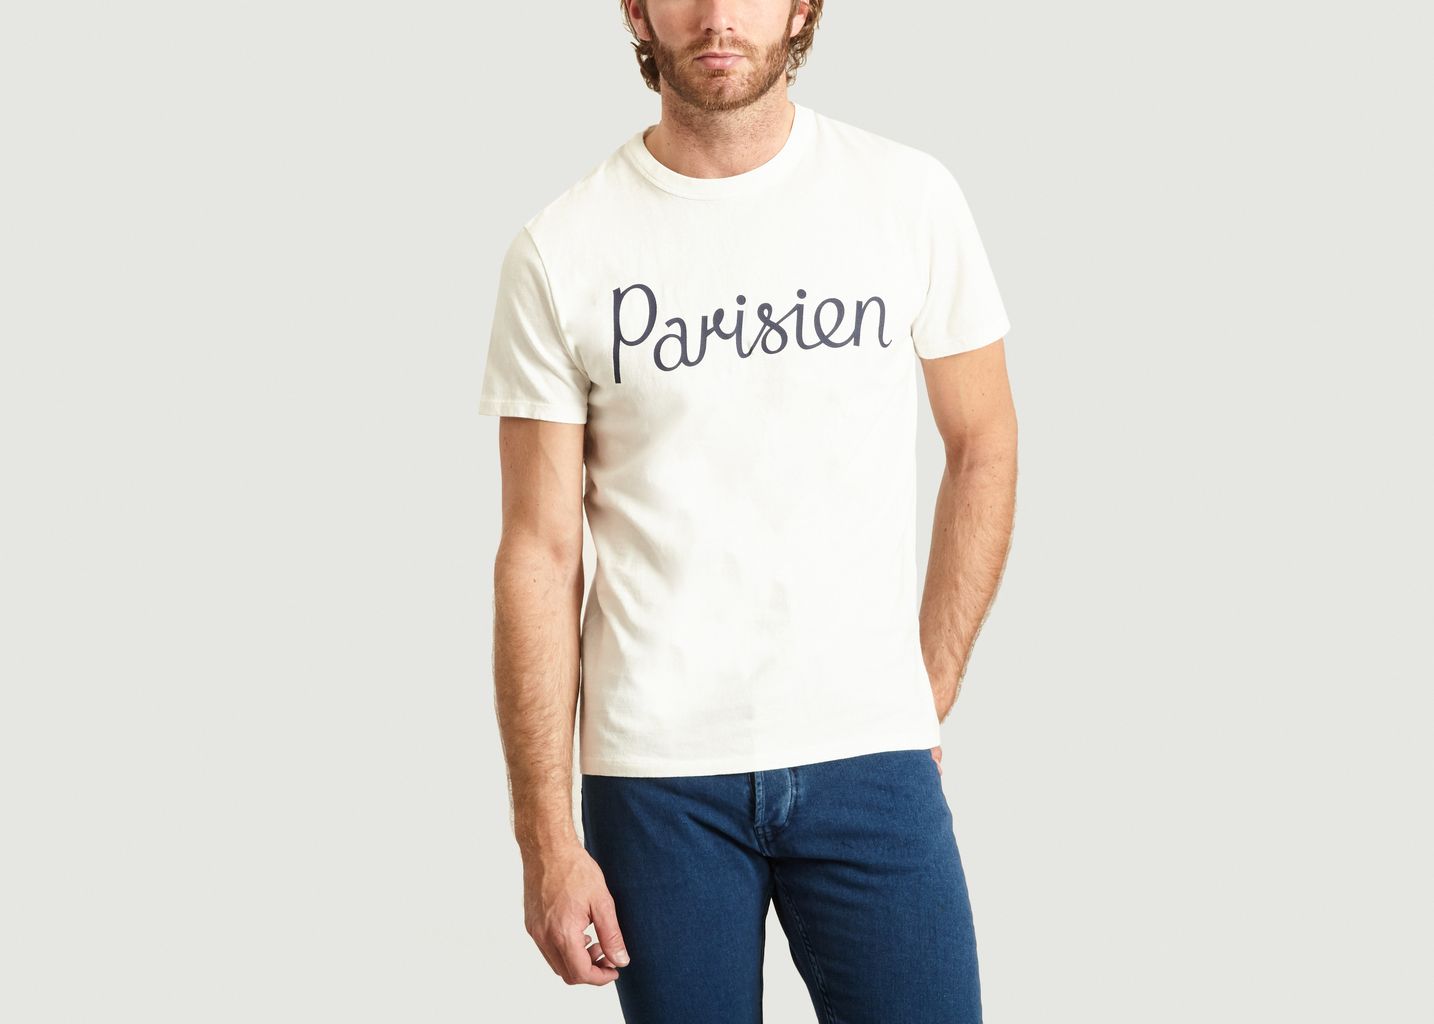 T-Shirt Parisien - Maison Kitsuné